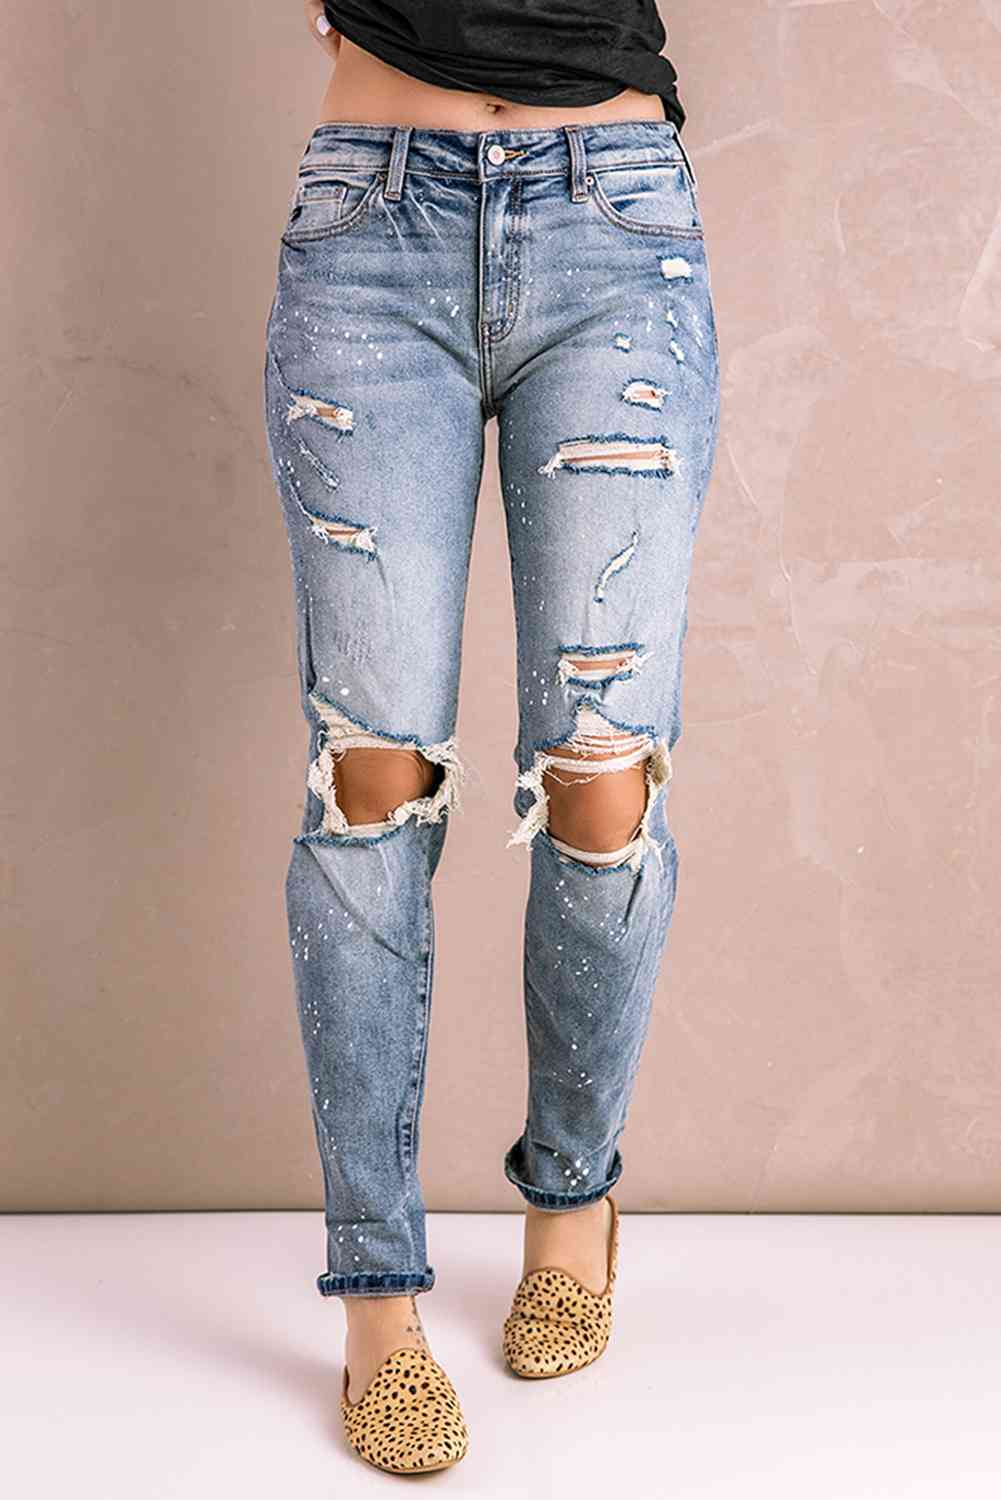 Baeful Splatter Distressed Acid Wash Jeans with Pockets Light Wash M